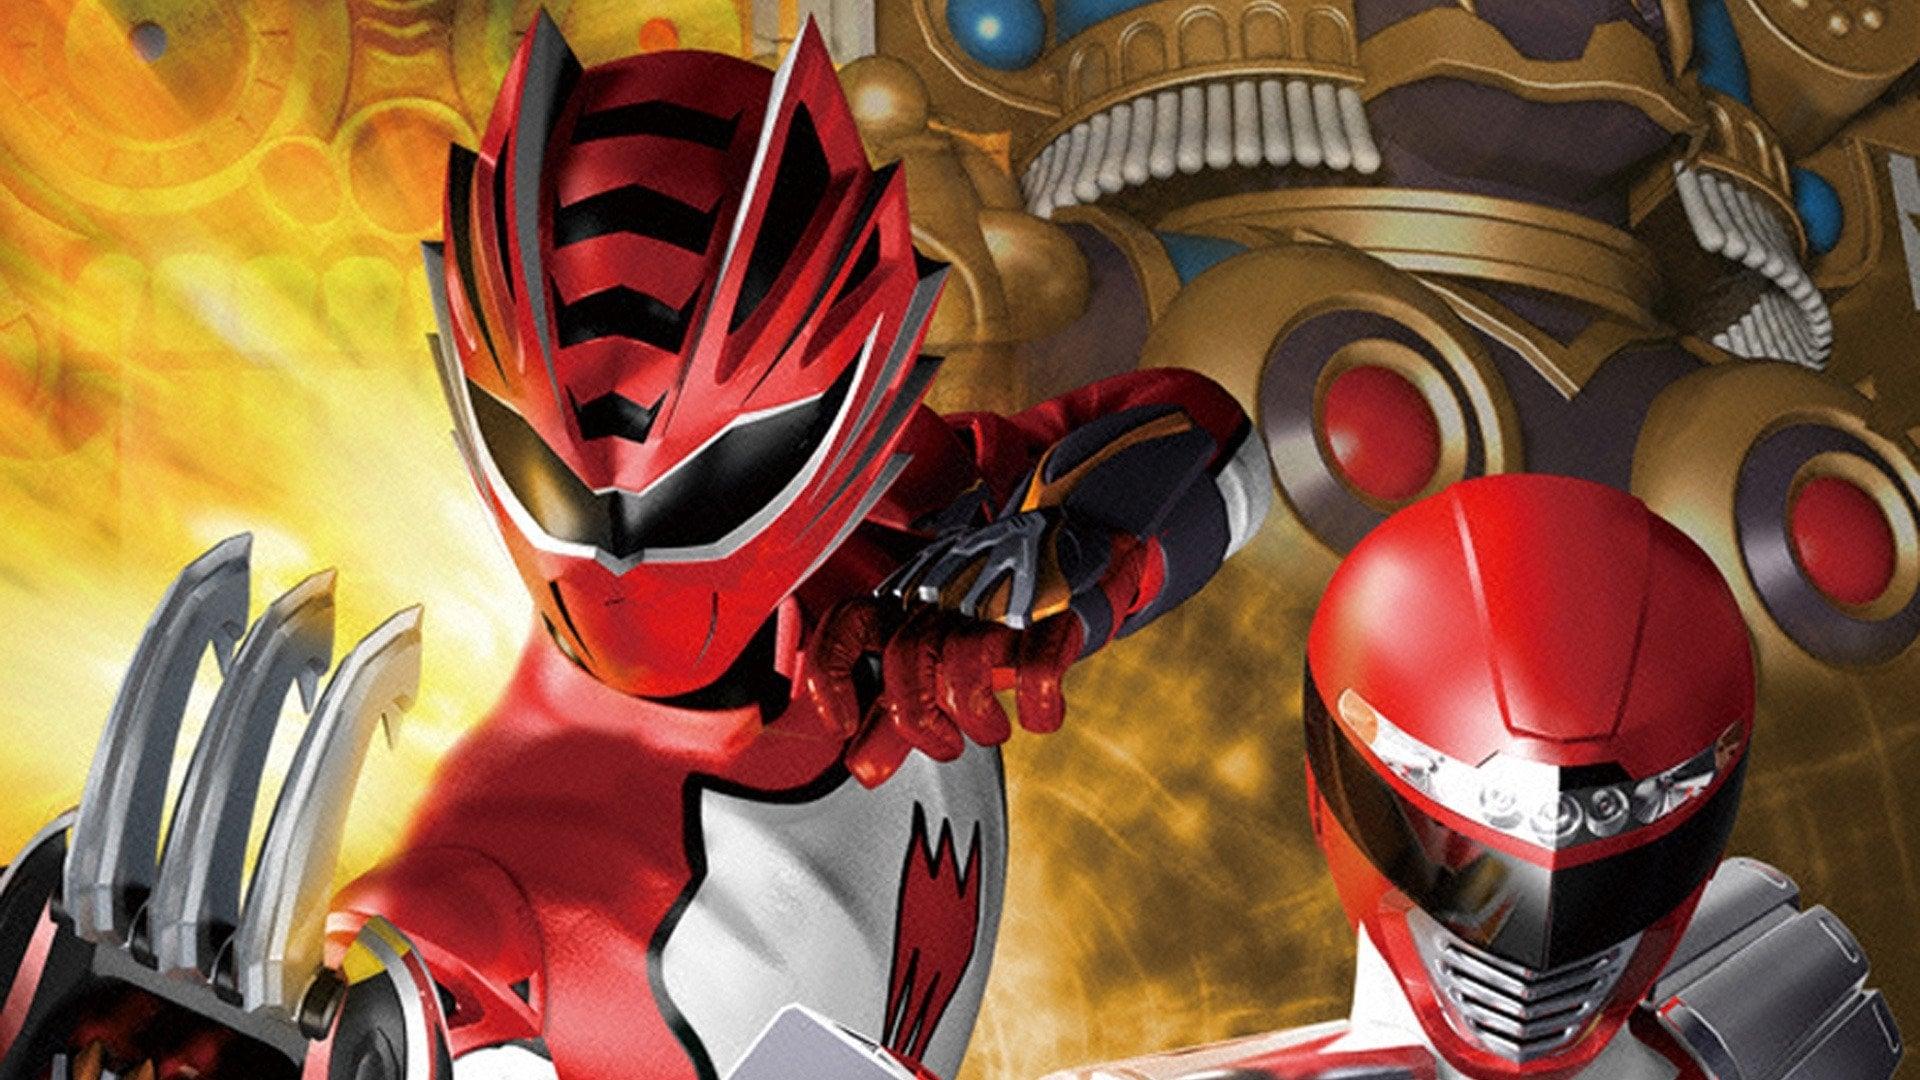 Juken Sentai Gekiranger vs. Boukenger backdrop